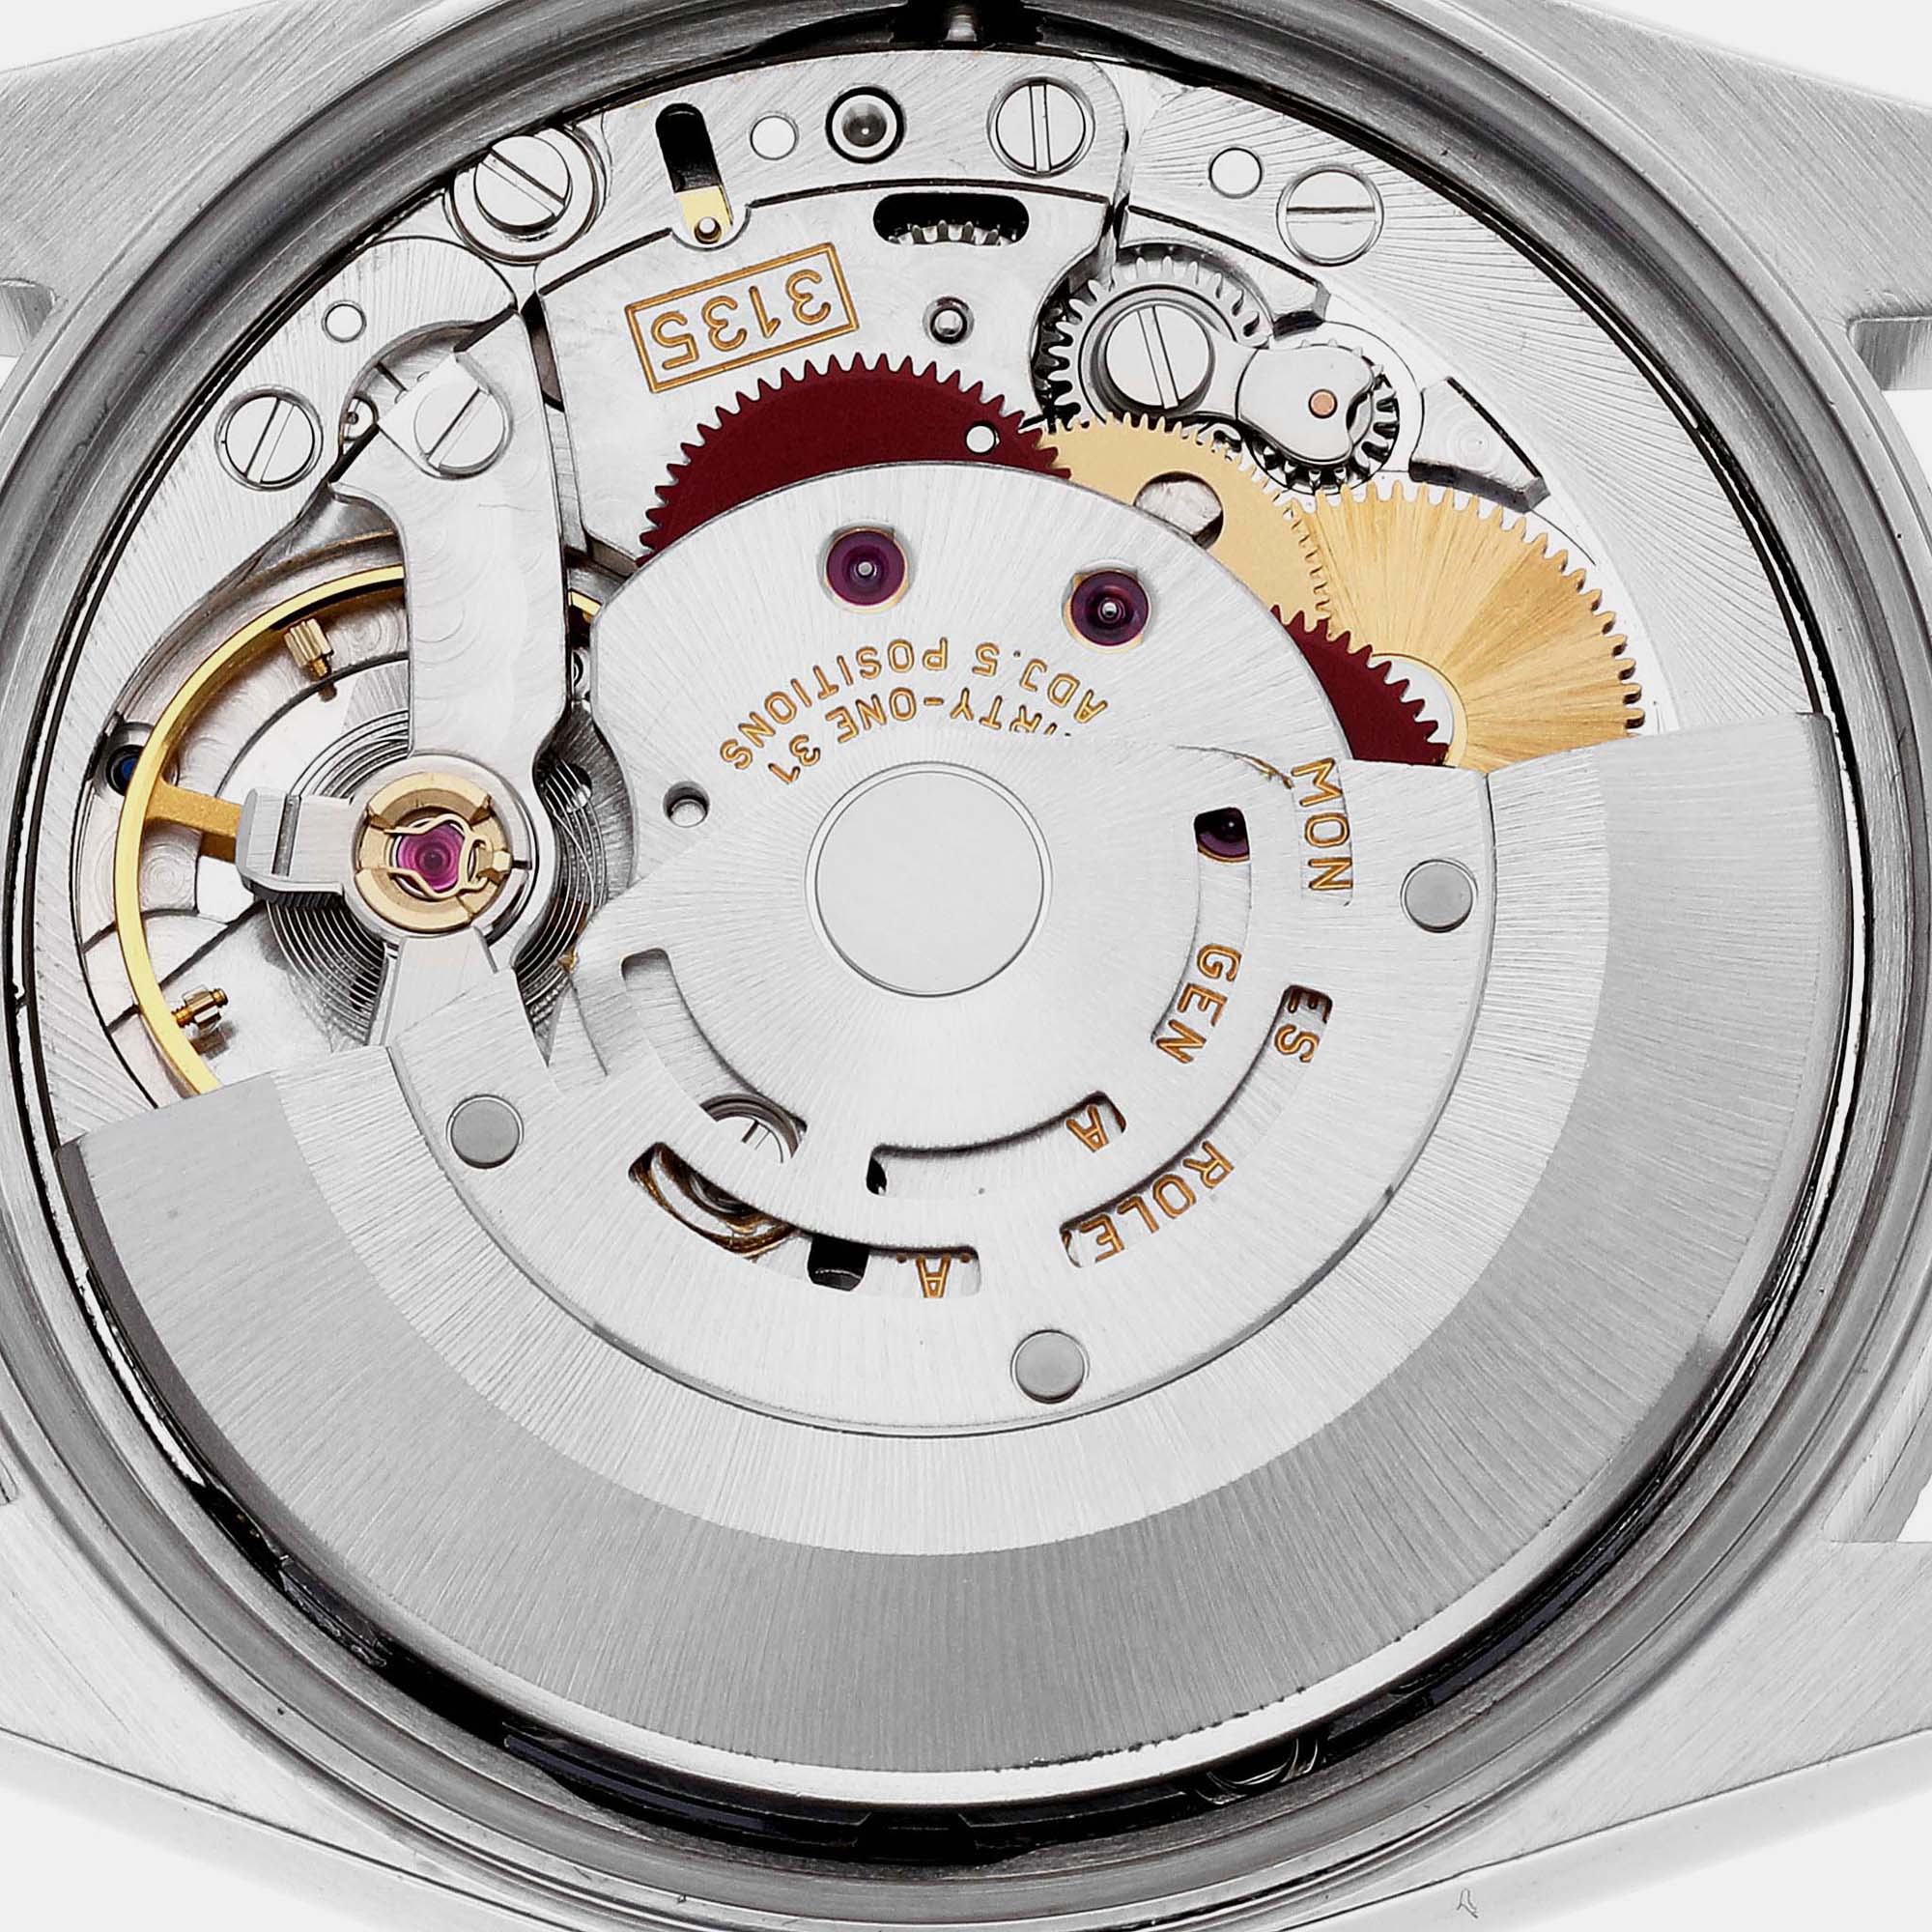 Rolex Date Black Dial Engine Turned Bezel Steel Men's Watch 15210 34 Mm